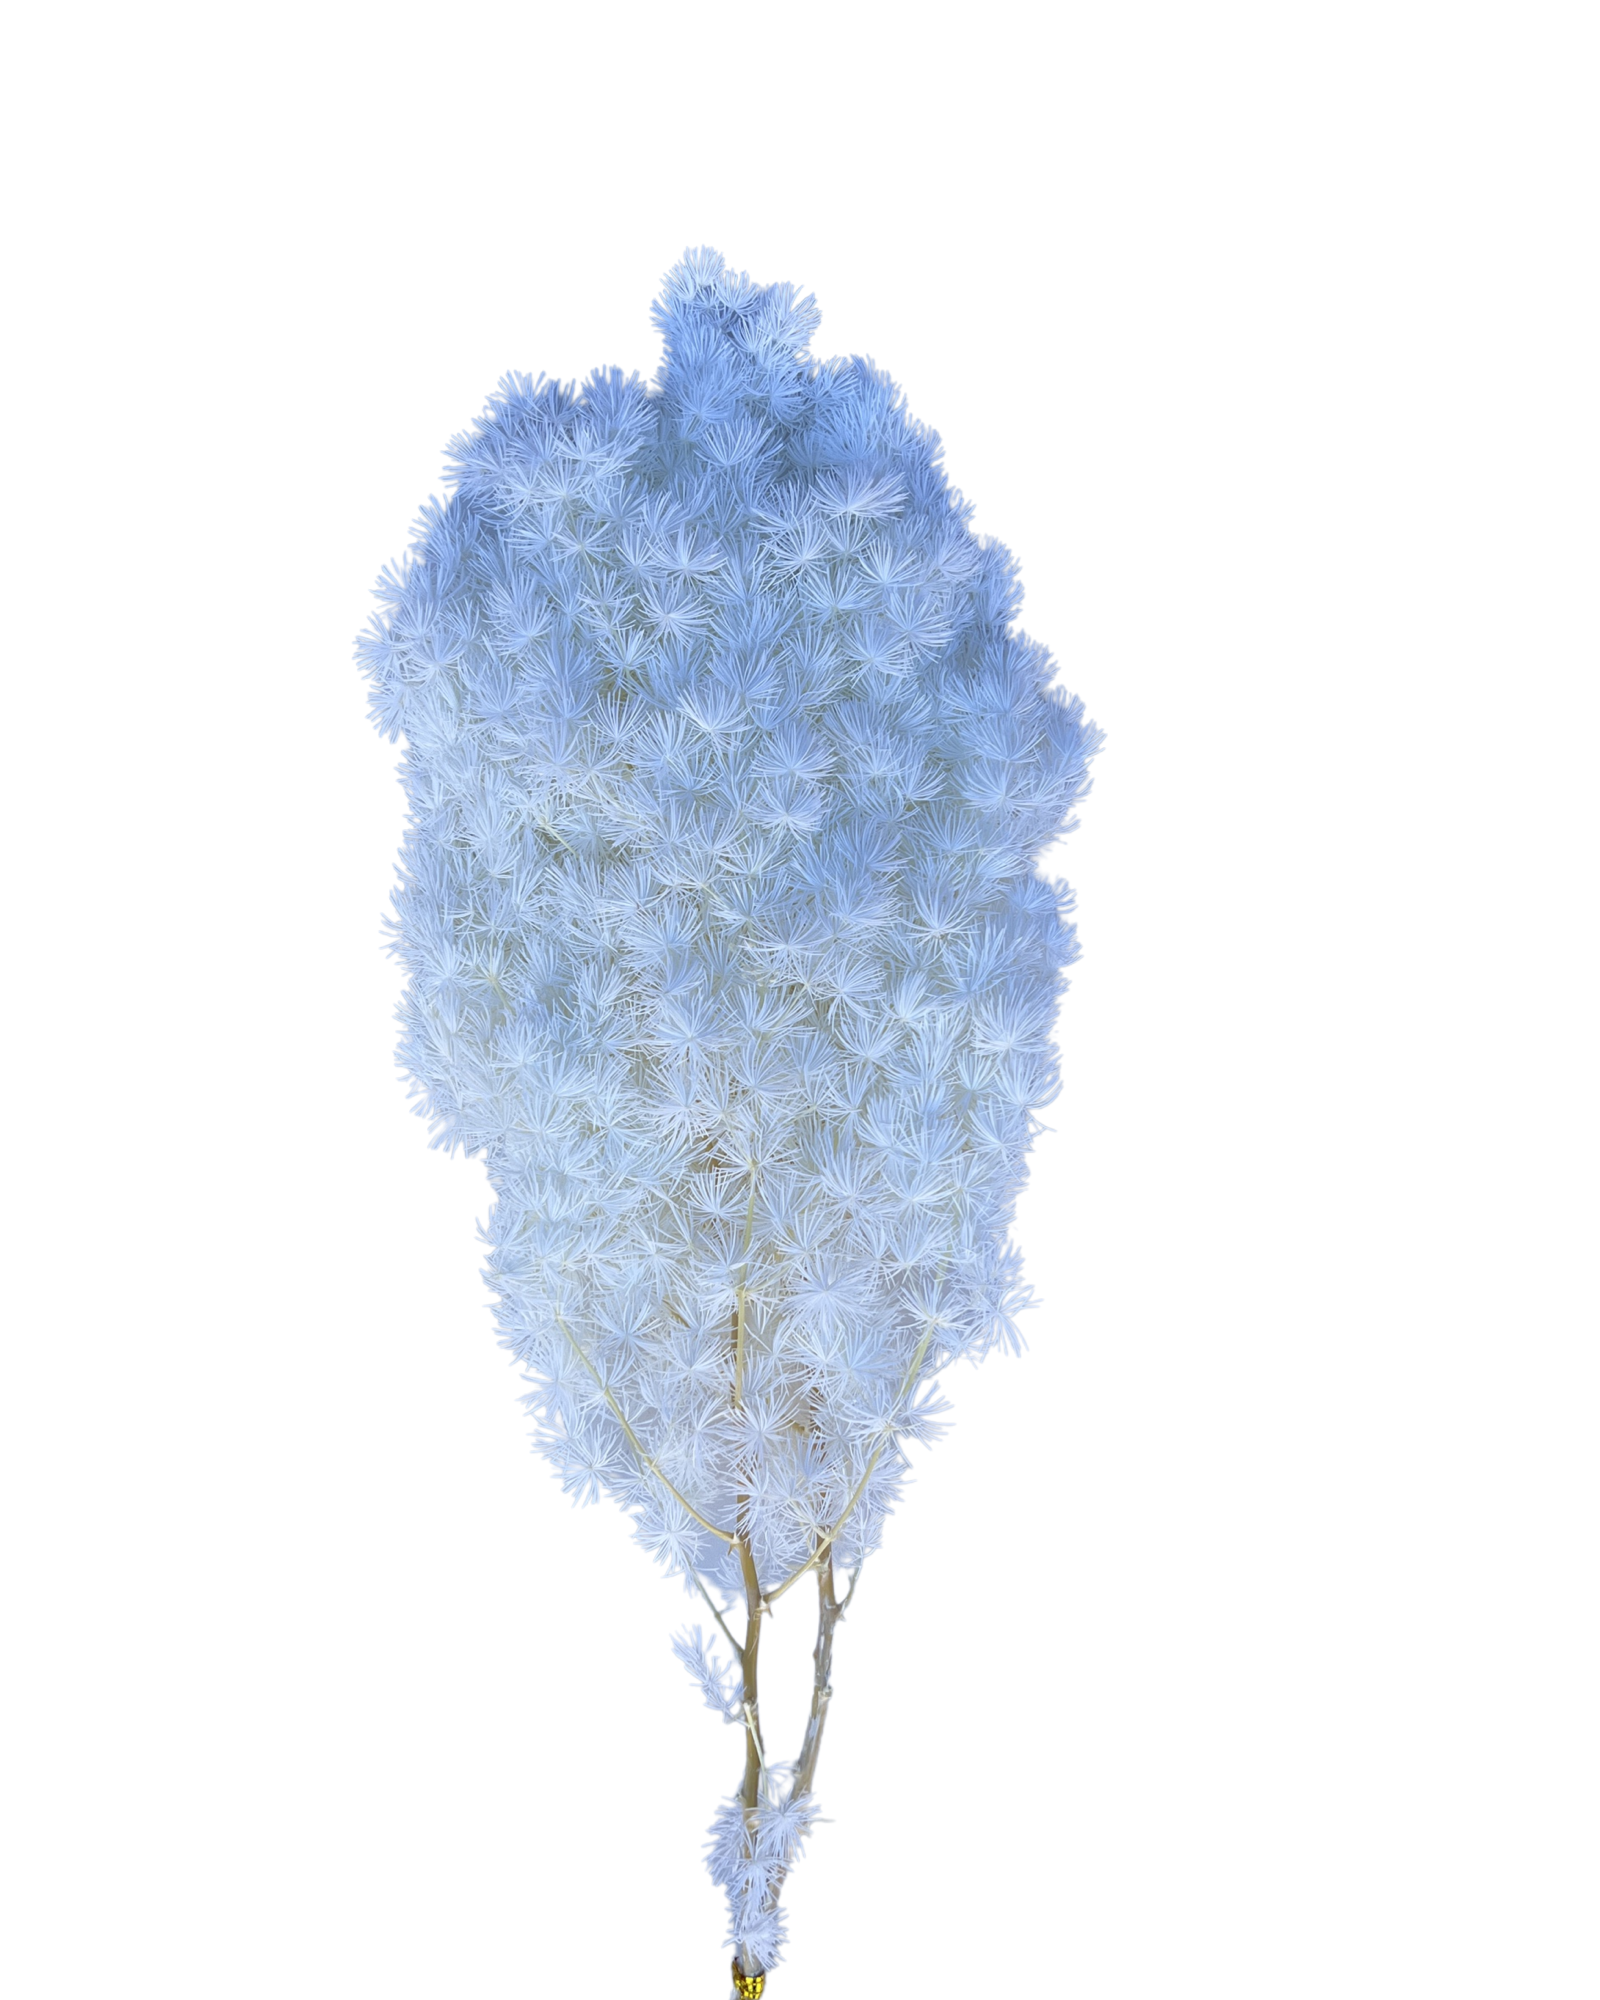 Ming fern(ASPARAGUS MYRIOCLADUS) - Lilac